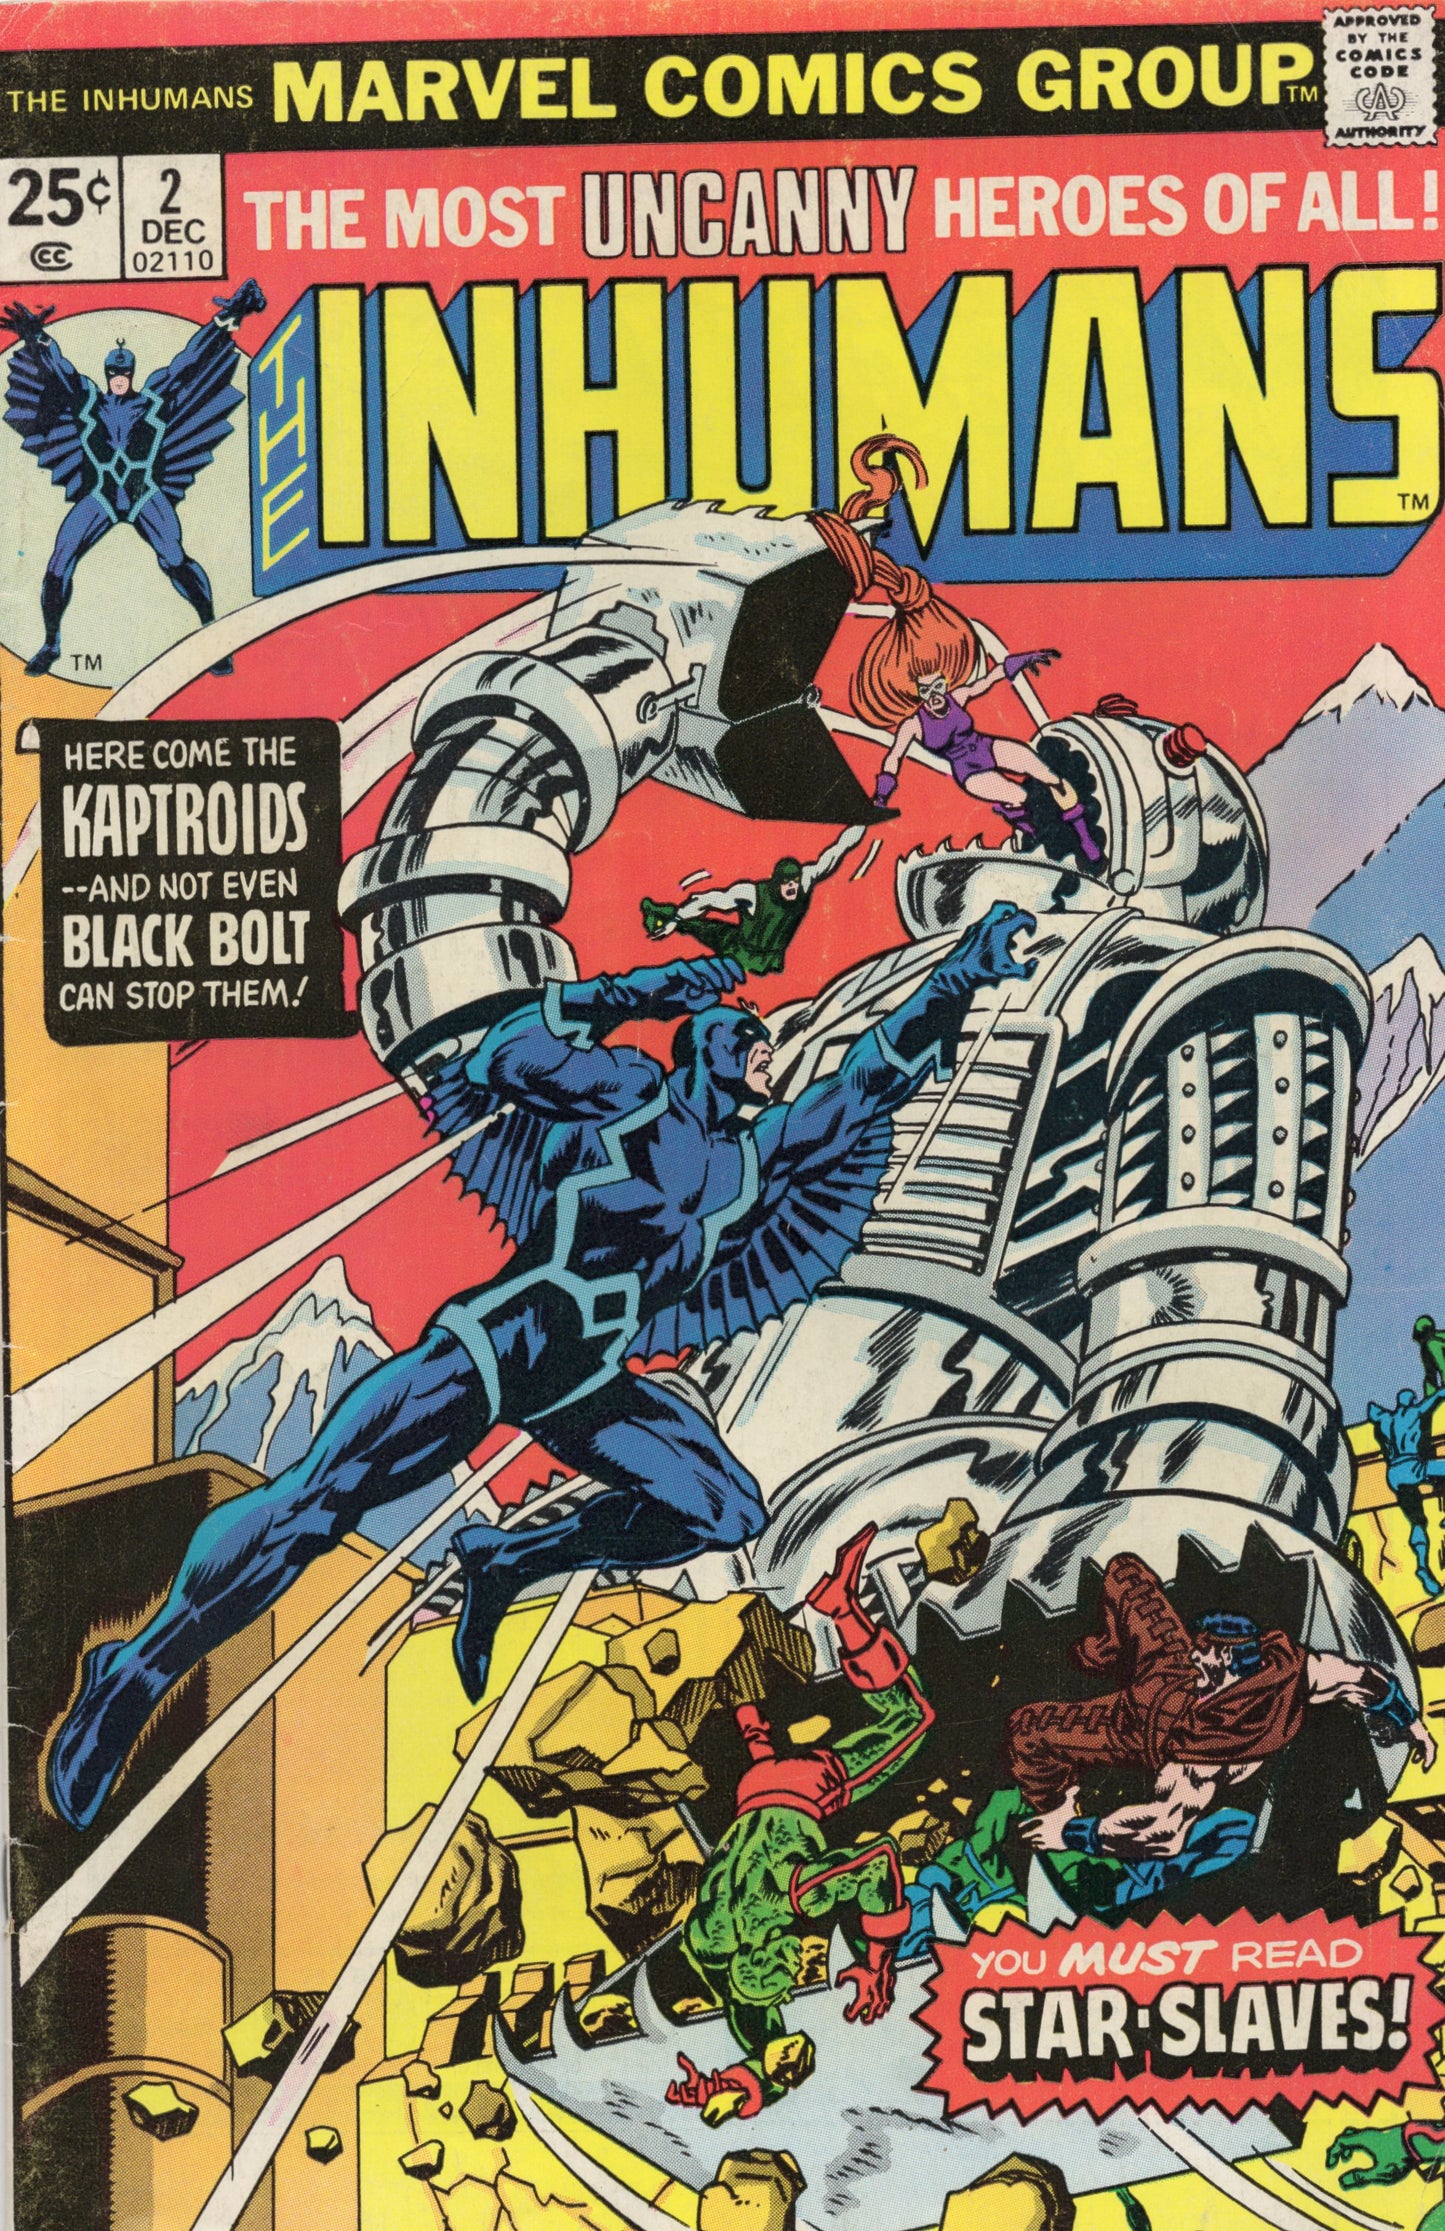 Inhumans Vol.1 #2